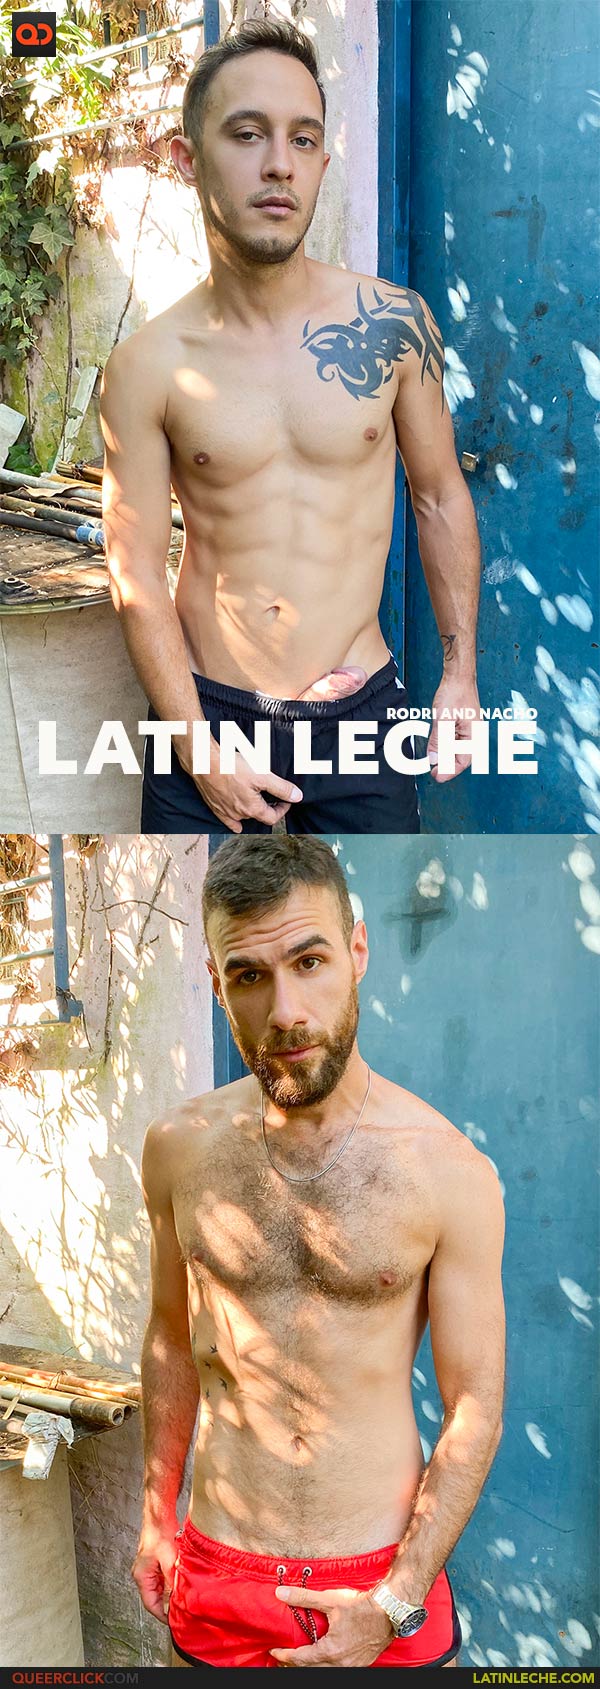 Latin Leche: Rodri and Nacho